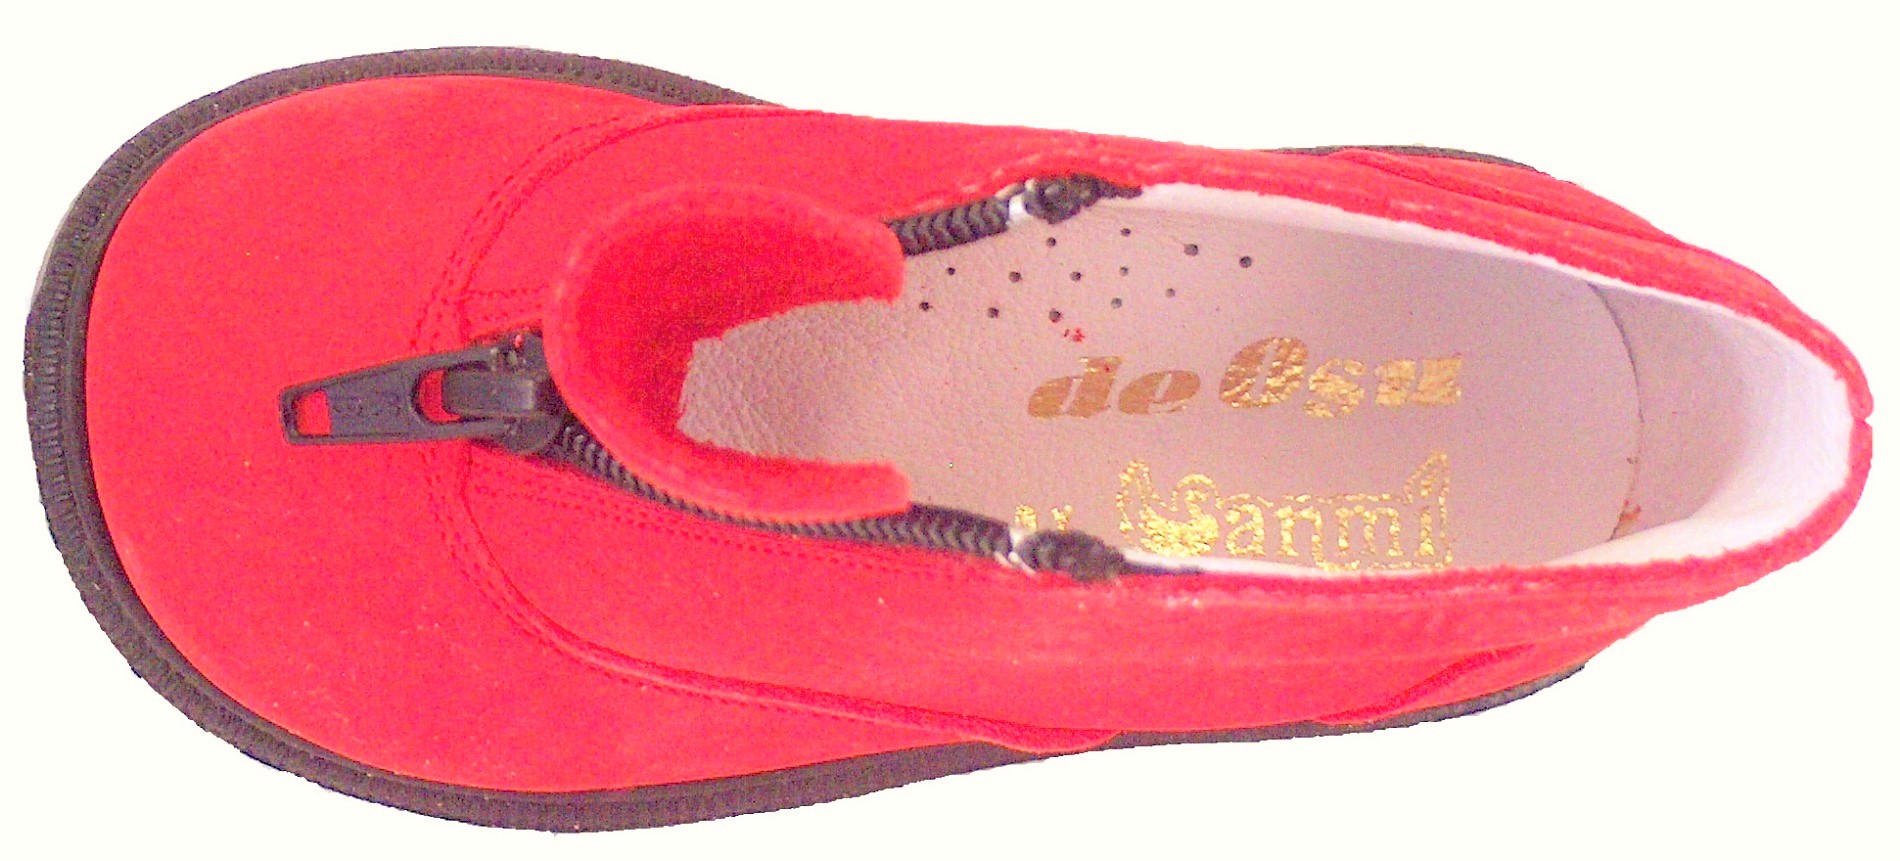 S-6733 - Red Nubuck Zipper Boots